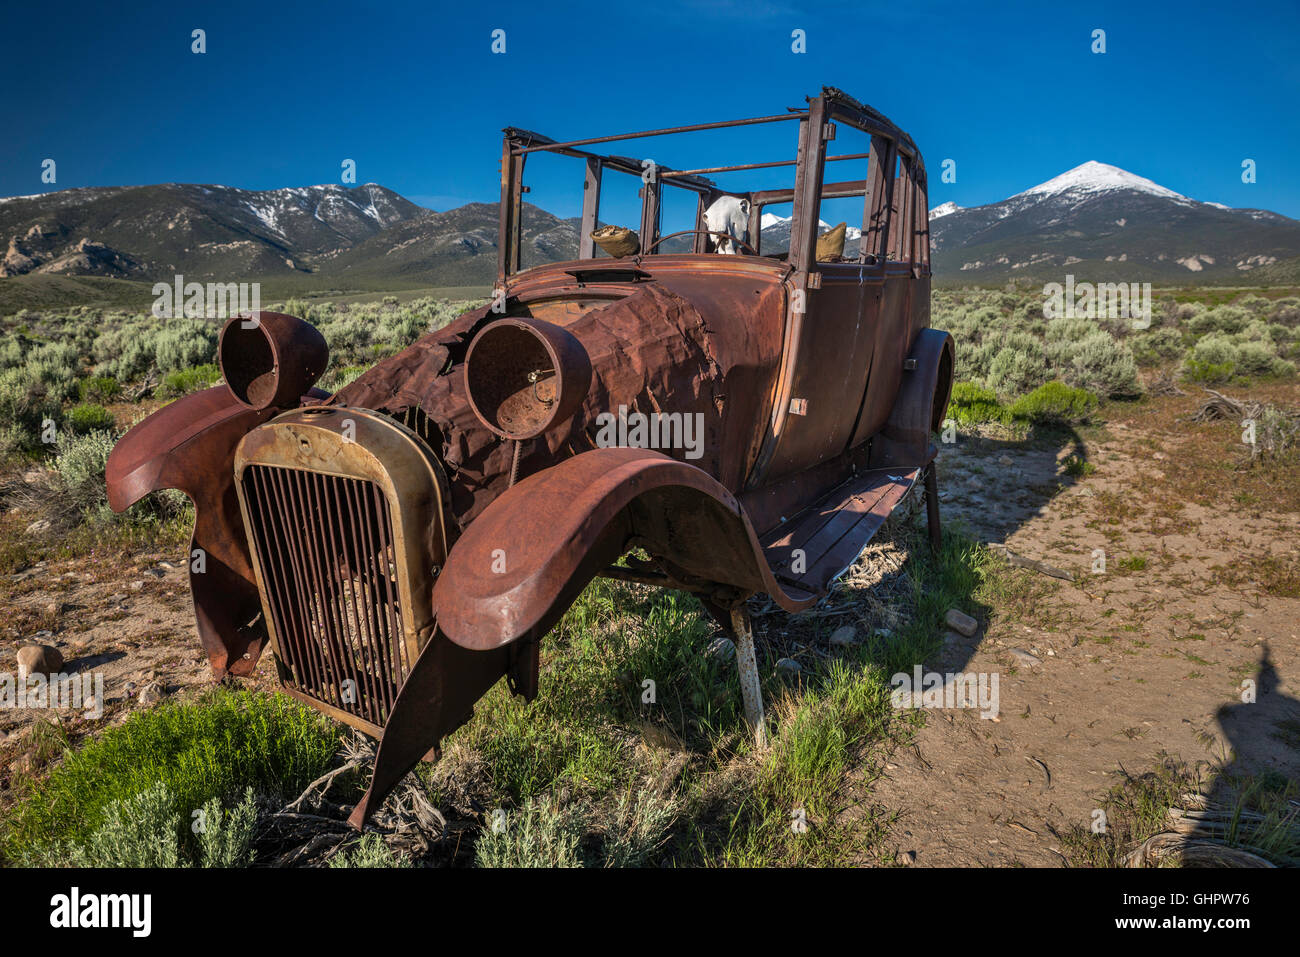 Naufragé abandonné épave de voiture, crâne de vache à l'intérieur, dans la vallée de Snake, près du parc national de Great Basin et de la ville de Baker, Nevada, Etats-Unis Banque D'Images